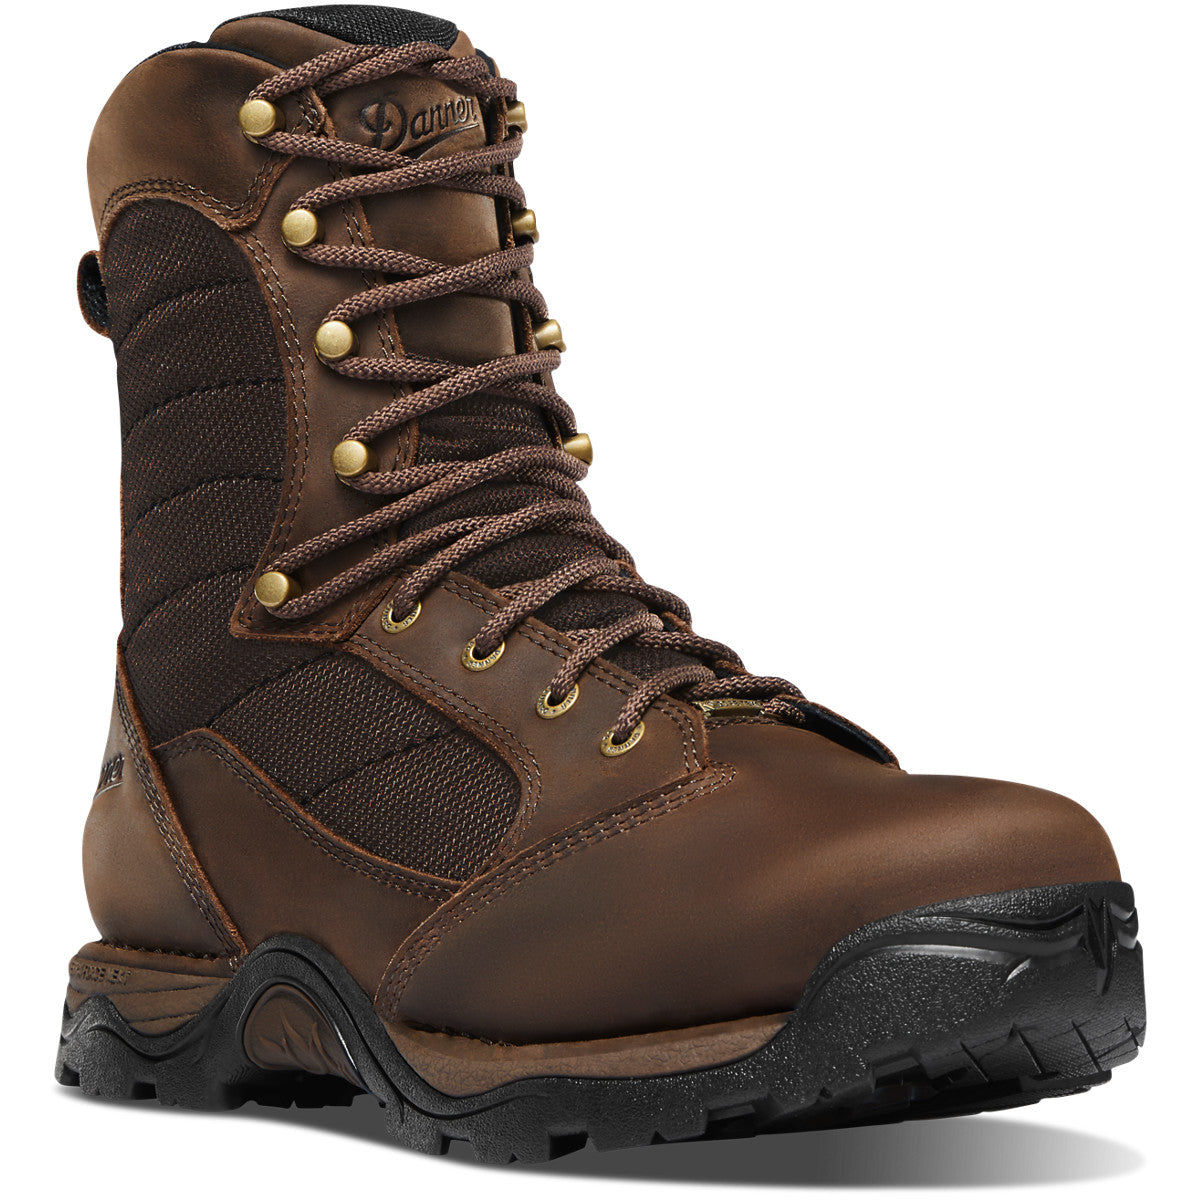 Danner Men's Pronghorn 8" WP Hunt Boot - Brown - 41340 7 / Medium / Brown - Overlook Boots